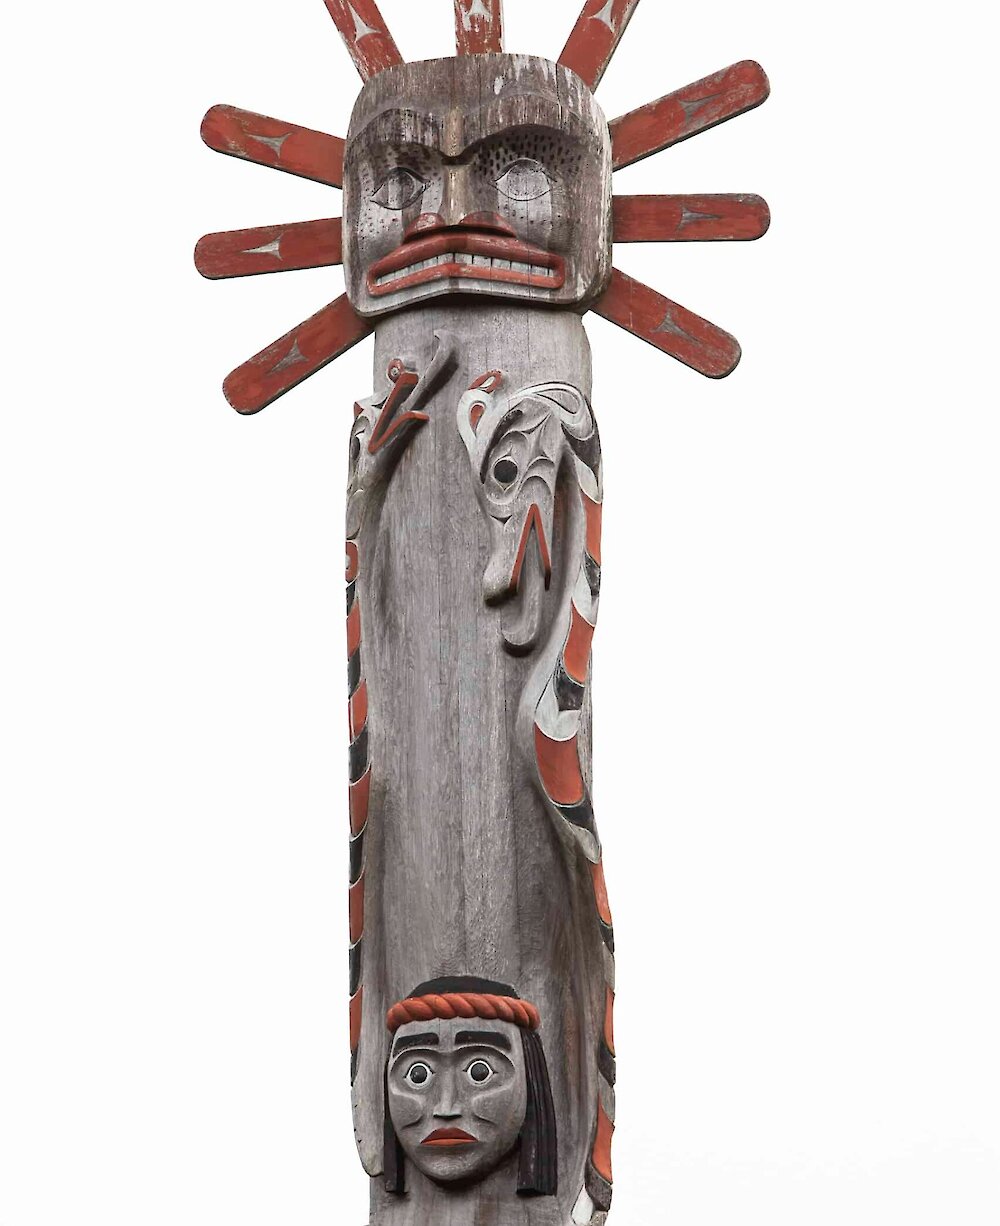 Totem pole with sun crest